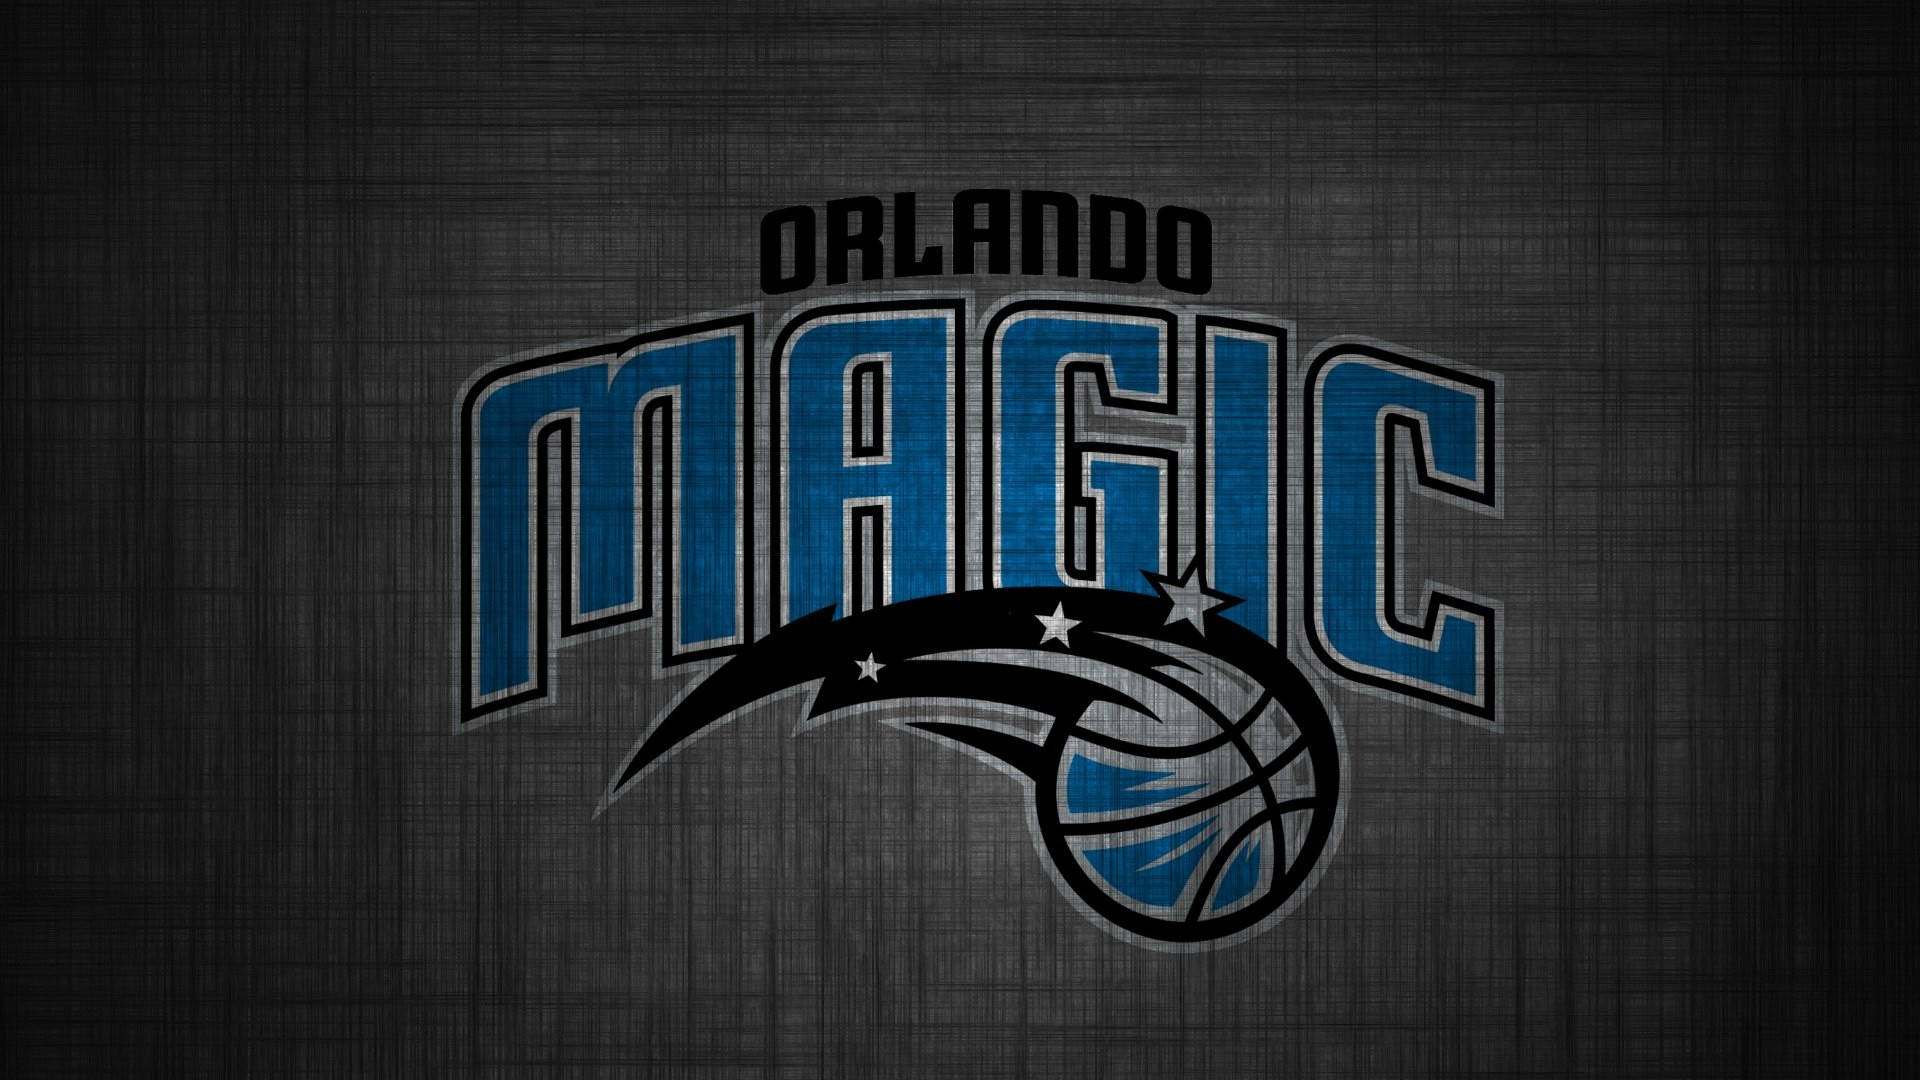 Orlandomagic-logo In Grau Wallpaper